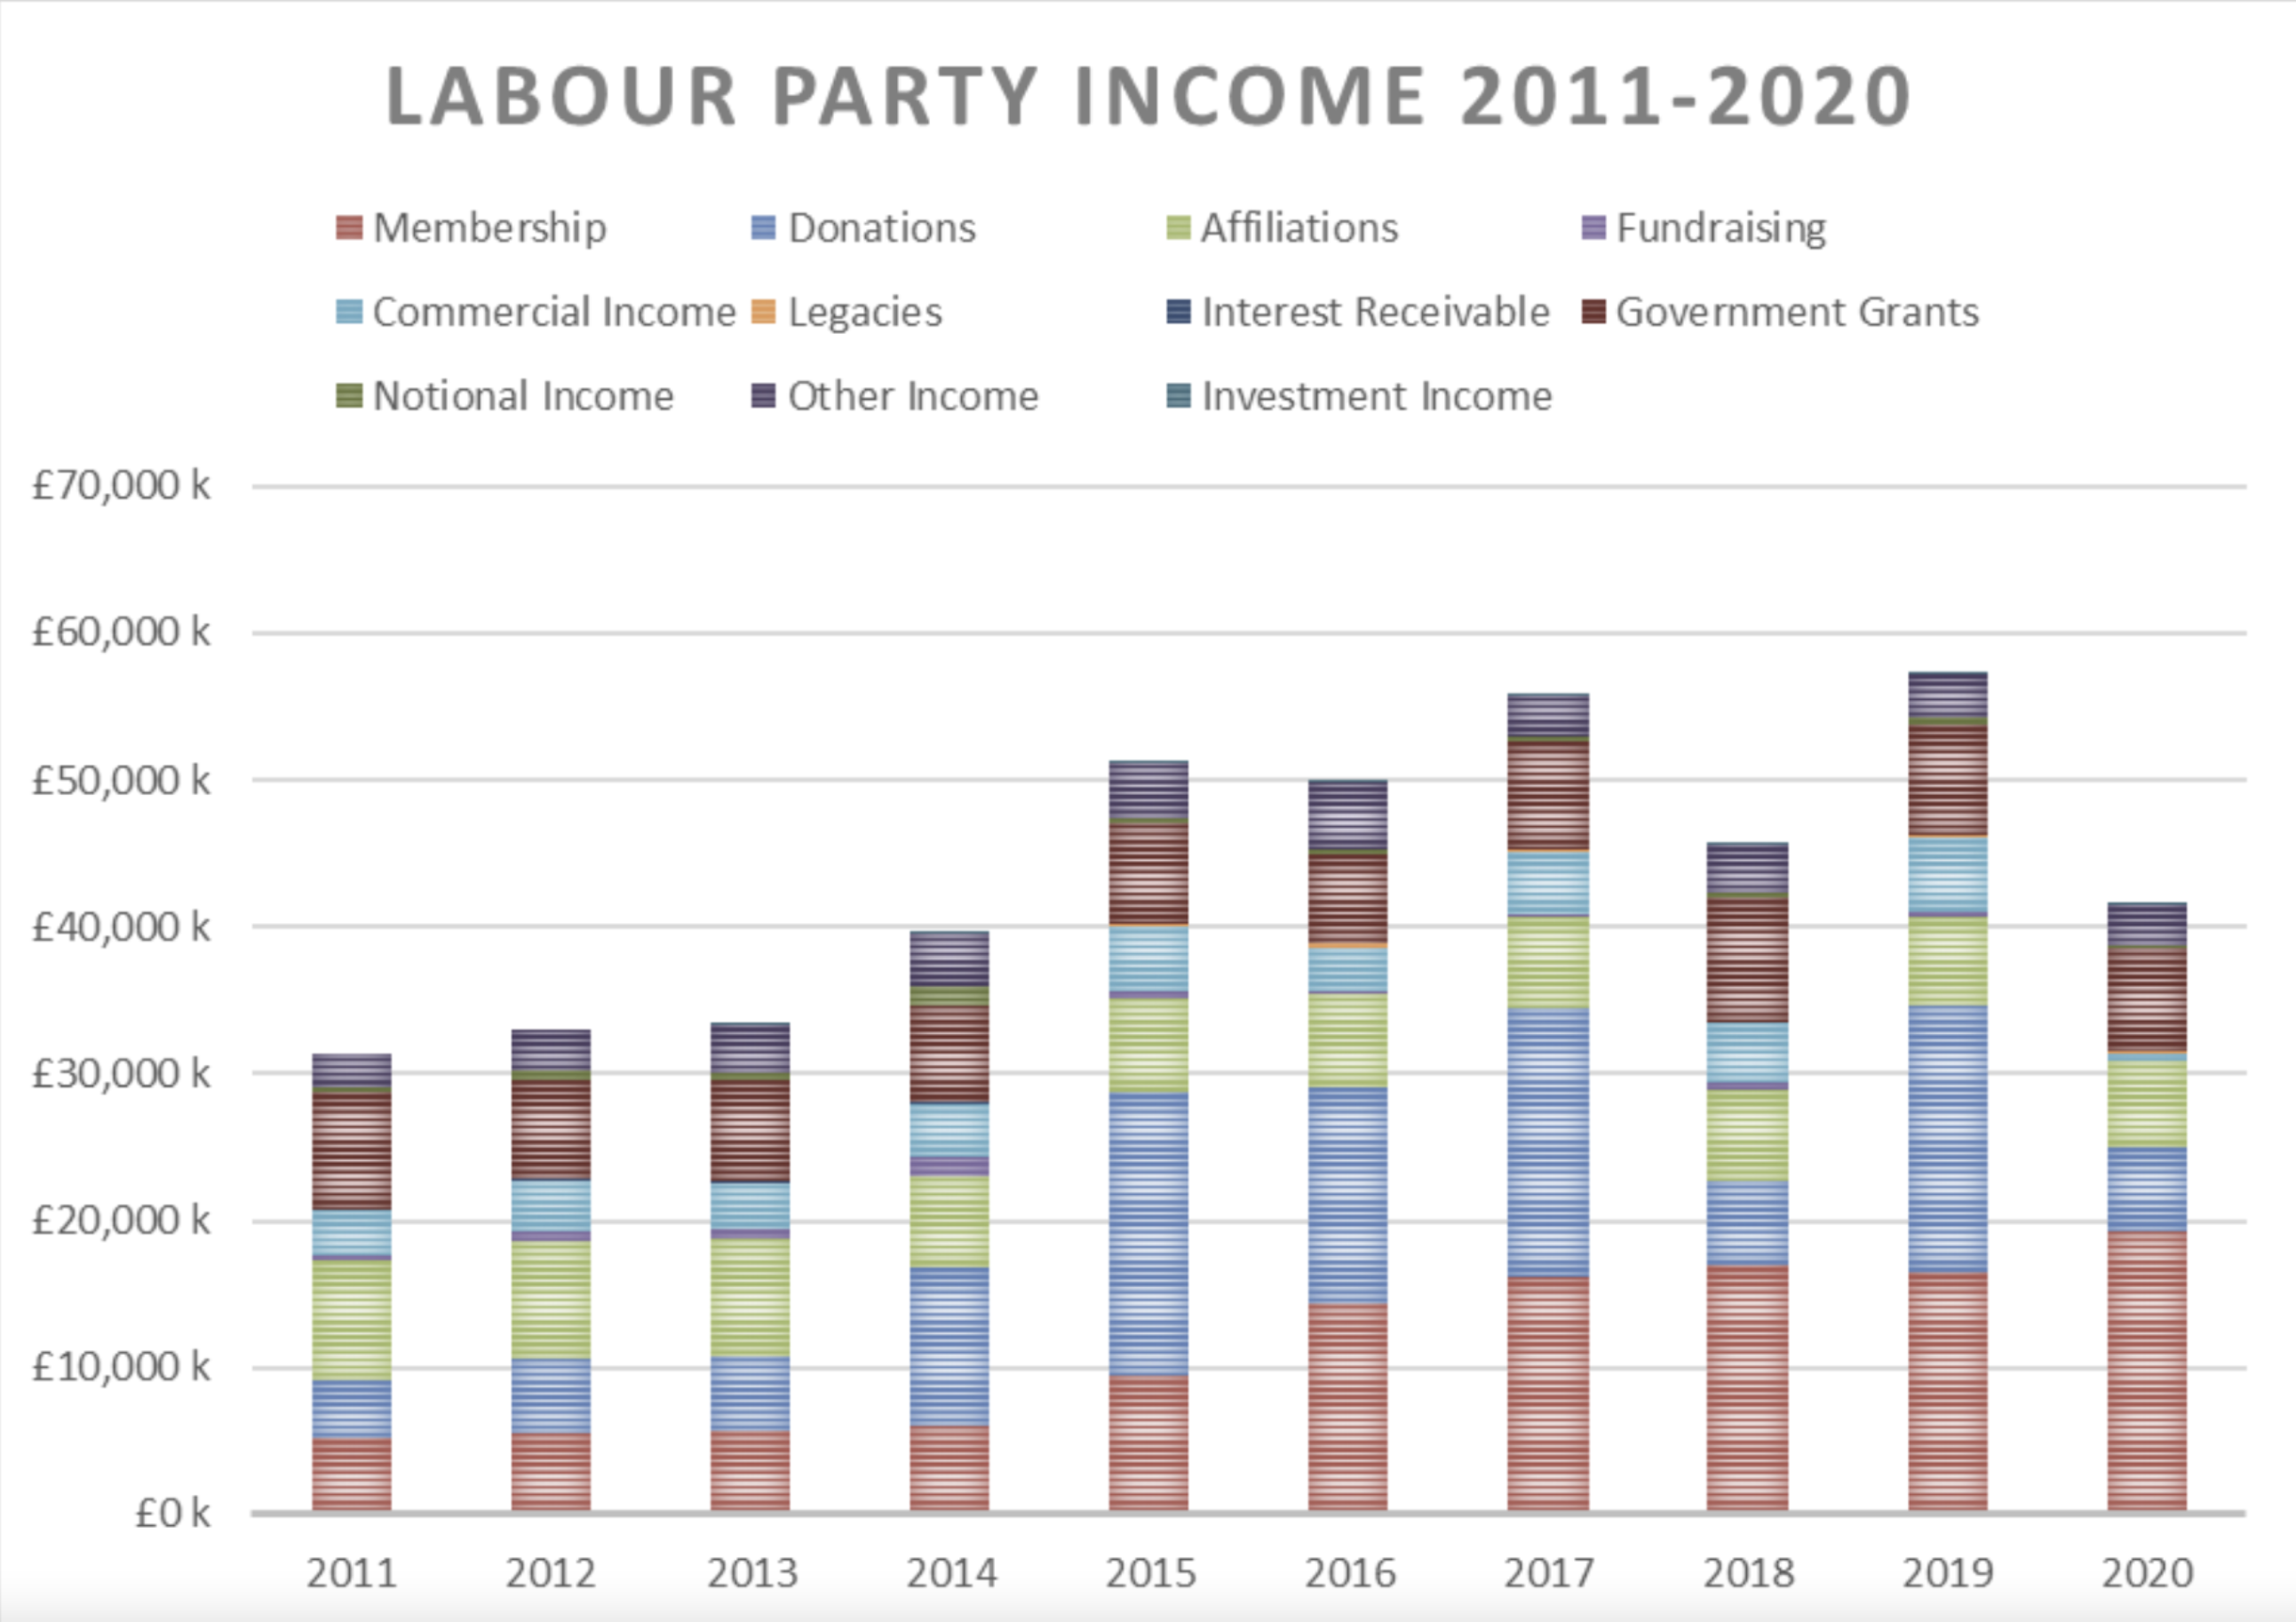 Labour Party Income Finances Analysis Comparison 2011-2020